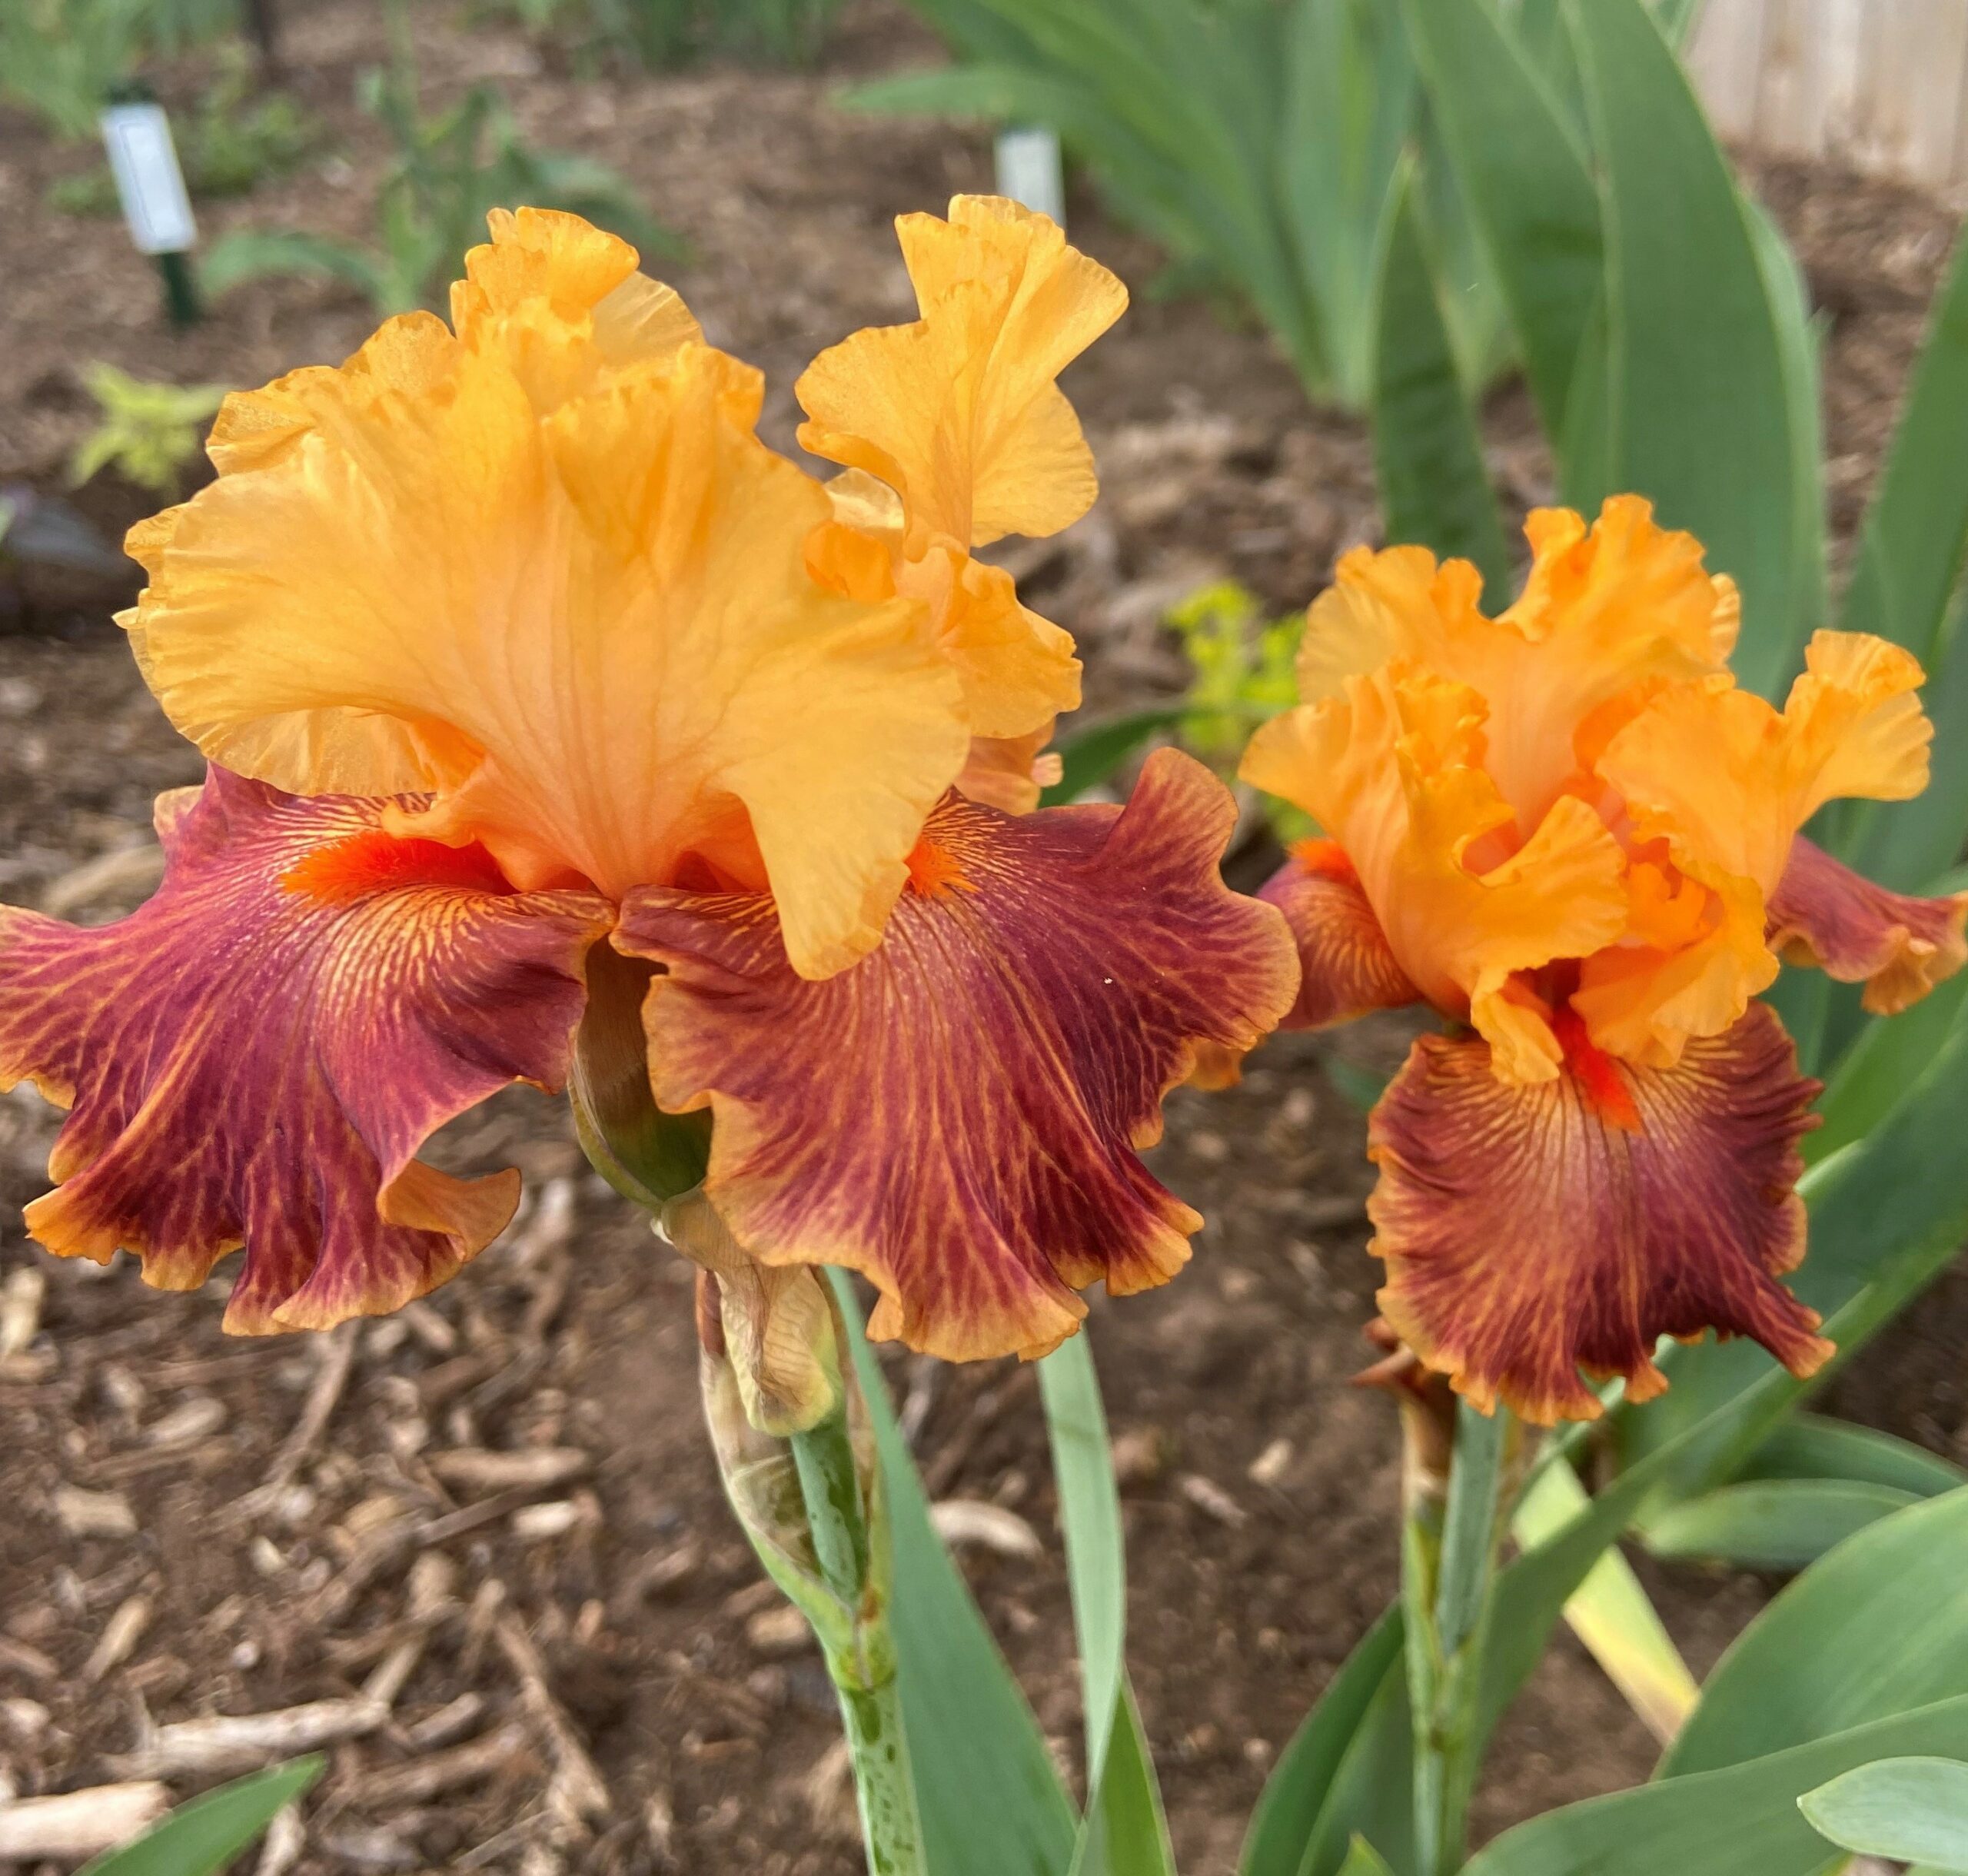 Centennial Iris Garden Dedication